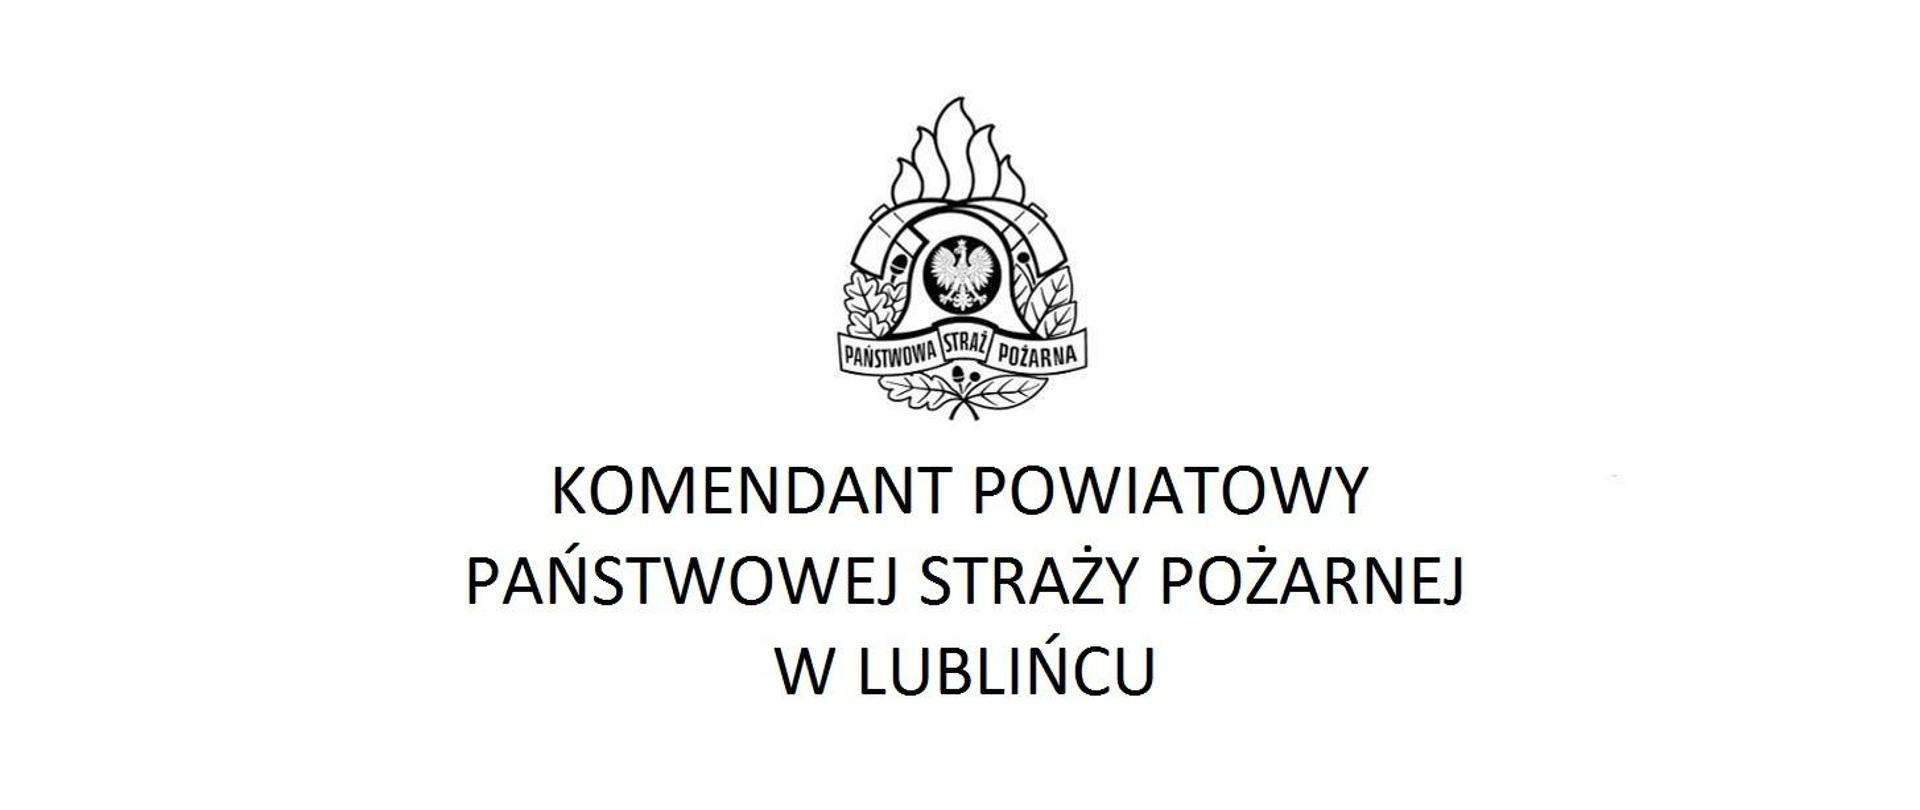 W centralnym miejscu logo Państwowej Straży Pożarnej, pod nim napis Komendant Powiatowy Państwowej Straży Pożarnej w Lublińcu.